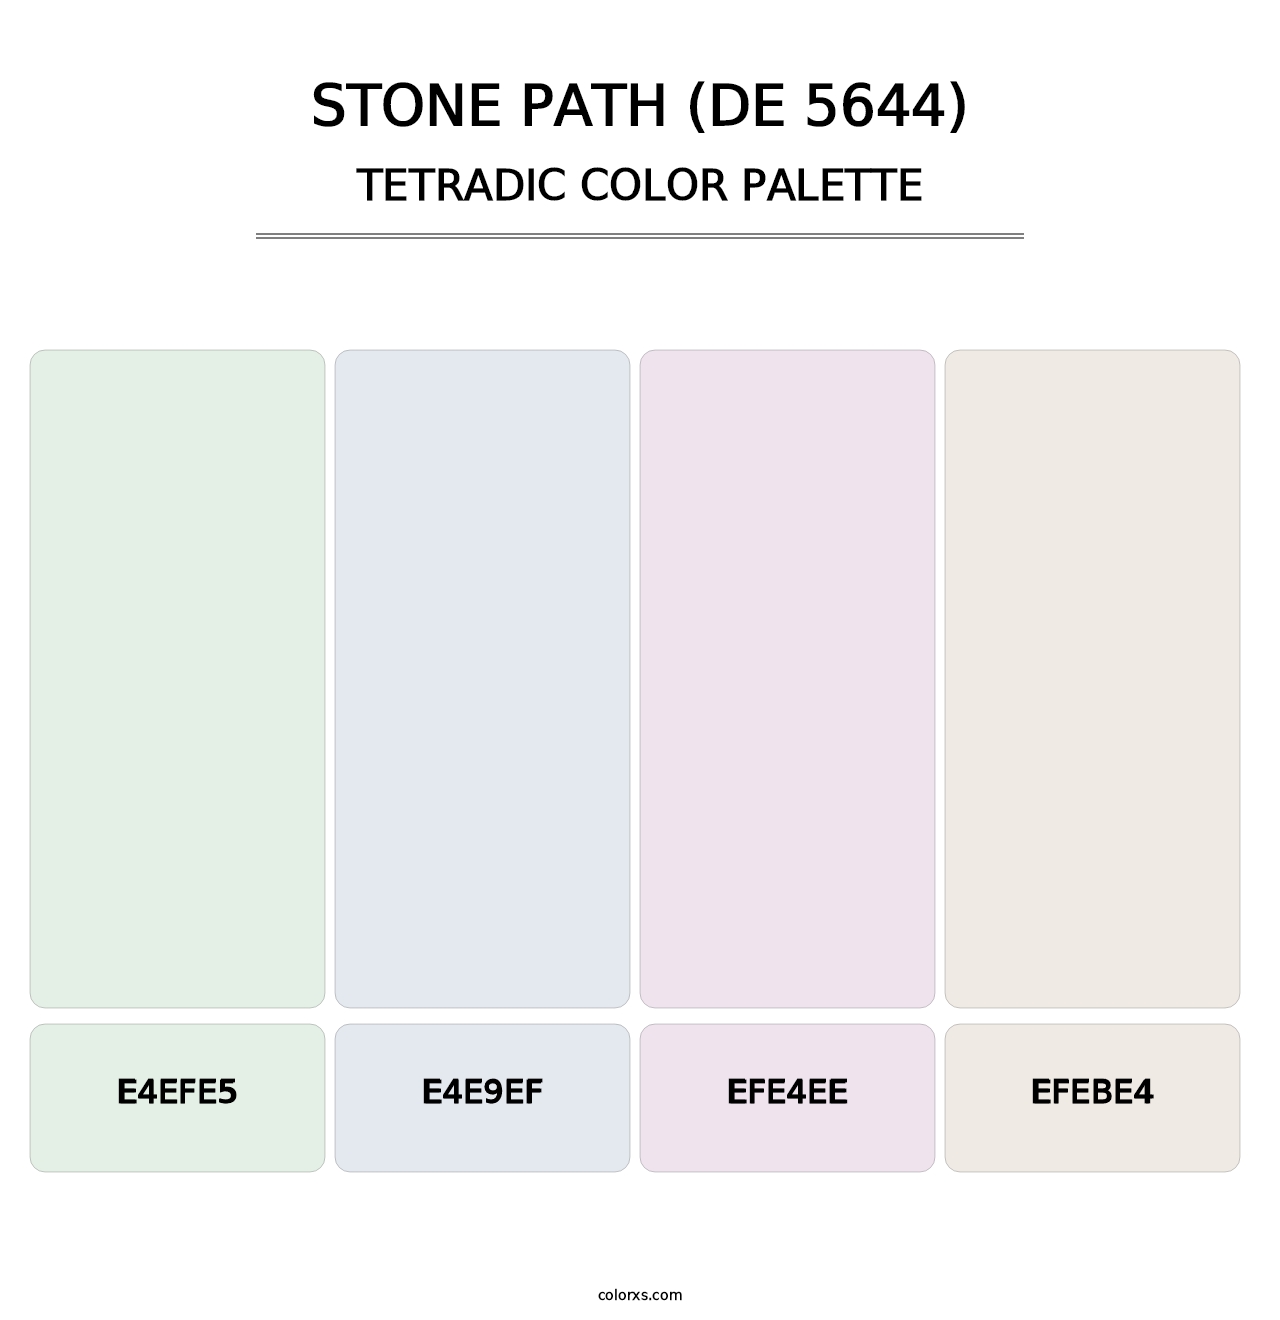 Stone Path (DE 5644) - Tetradic Color Palette